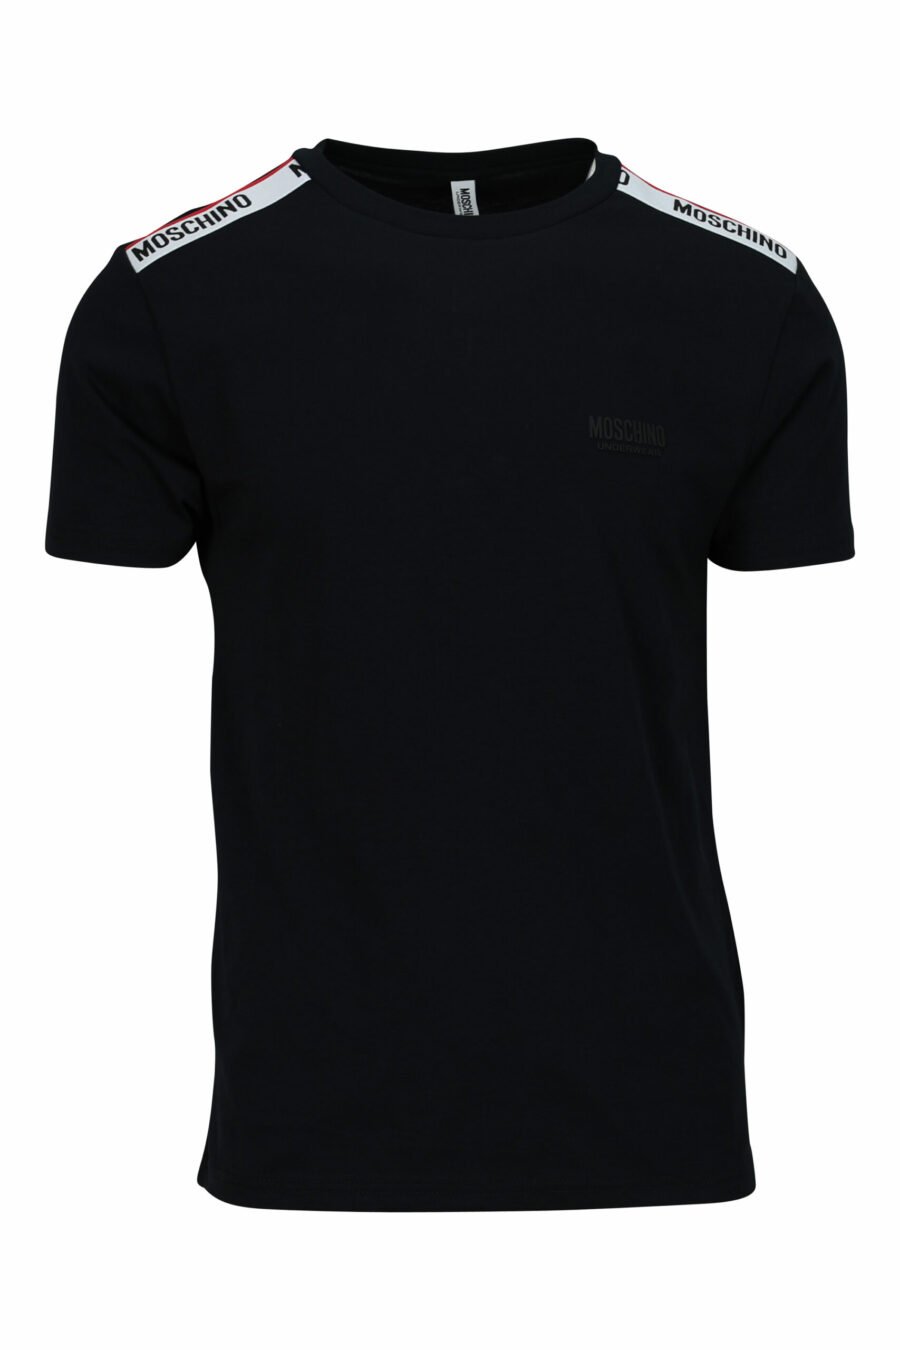 Schwarzes T-Shirt mit weißem Logo und roter Schleife an den Schultern - 667113604275 skaliert